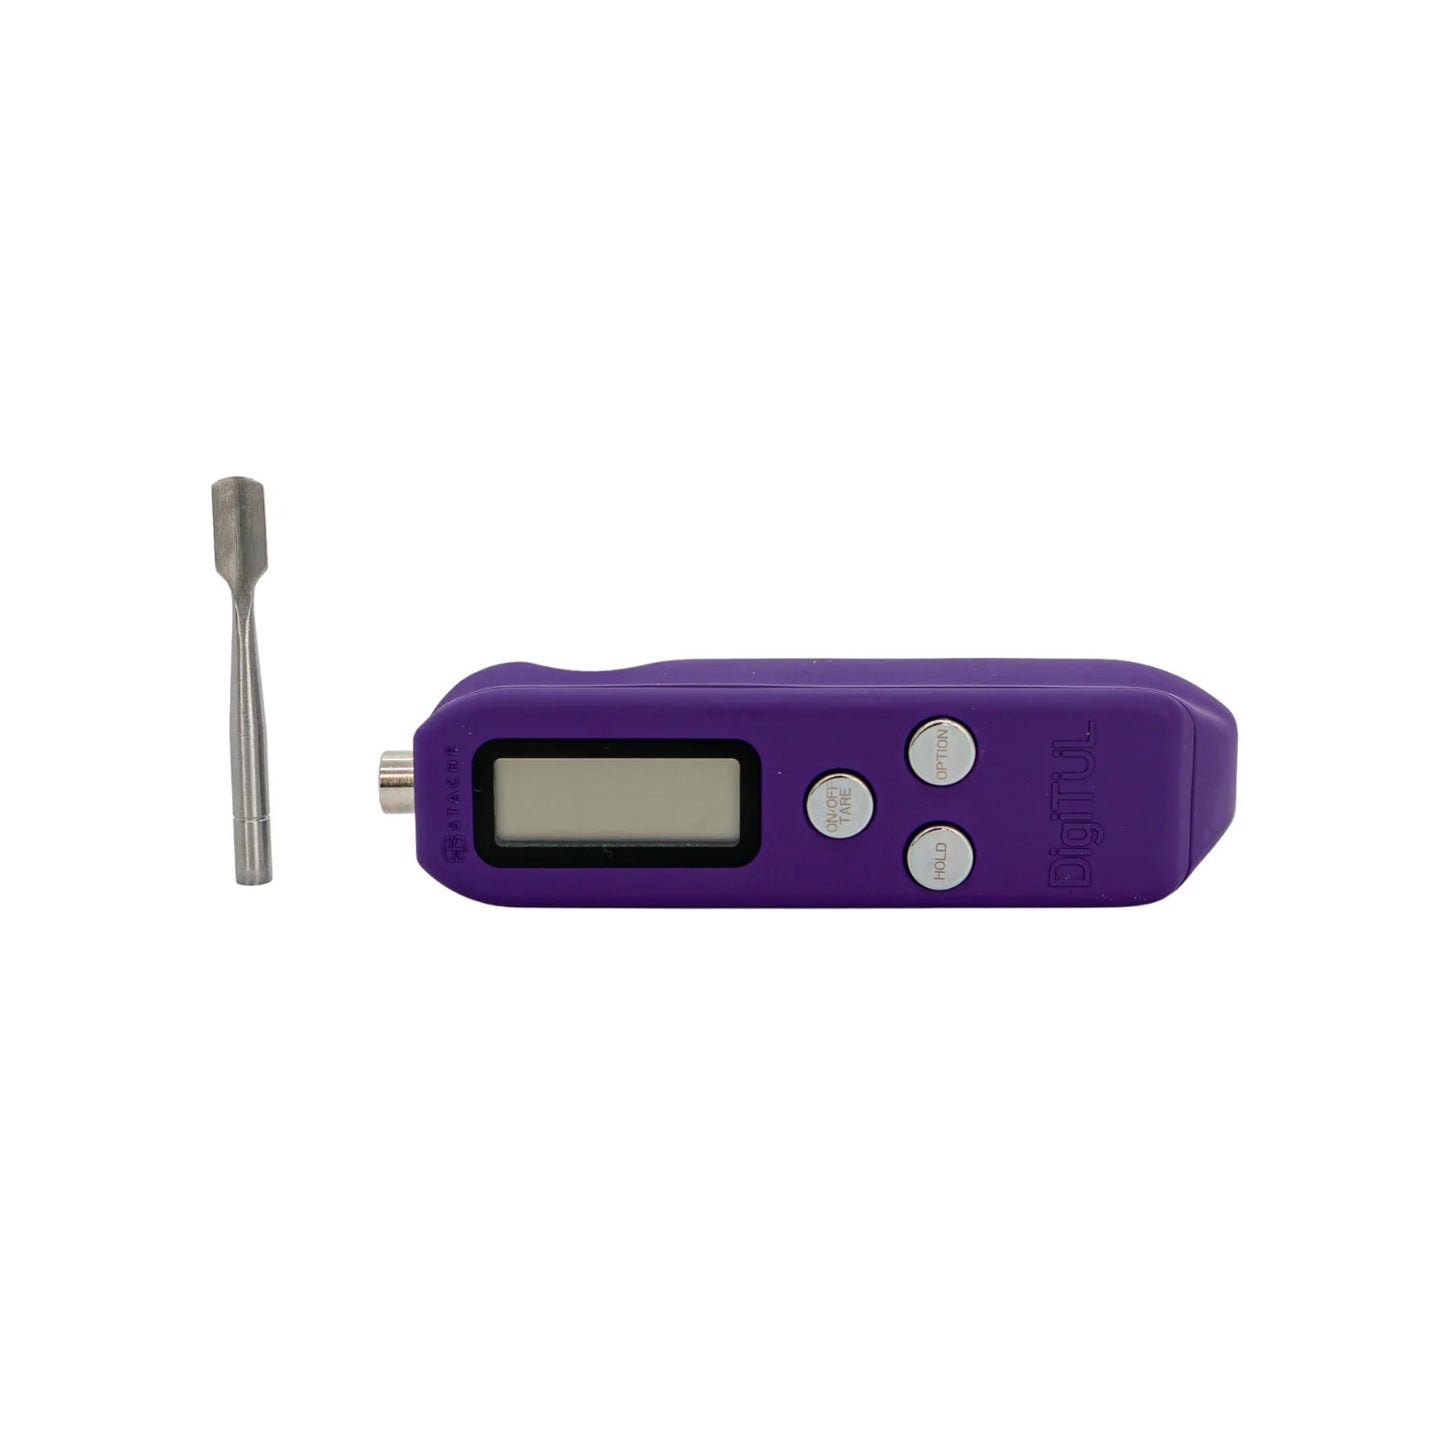 Stache DigiTul   digital scale tool. - Purple